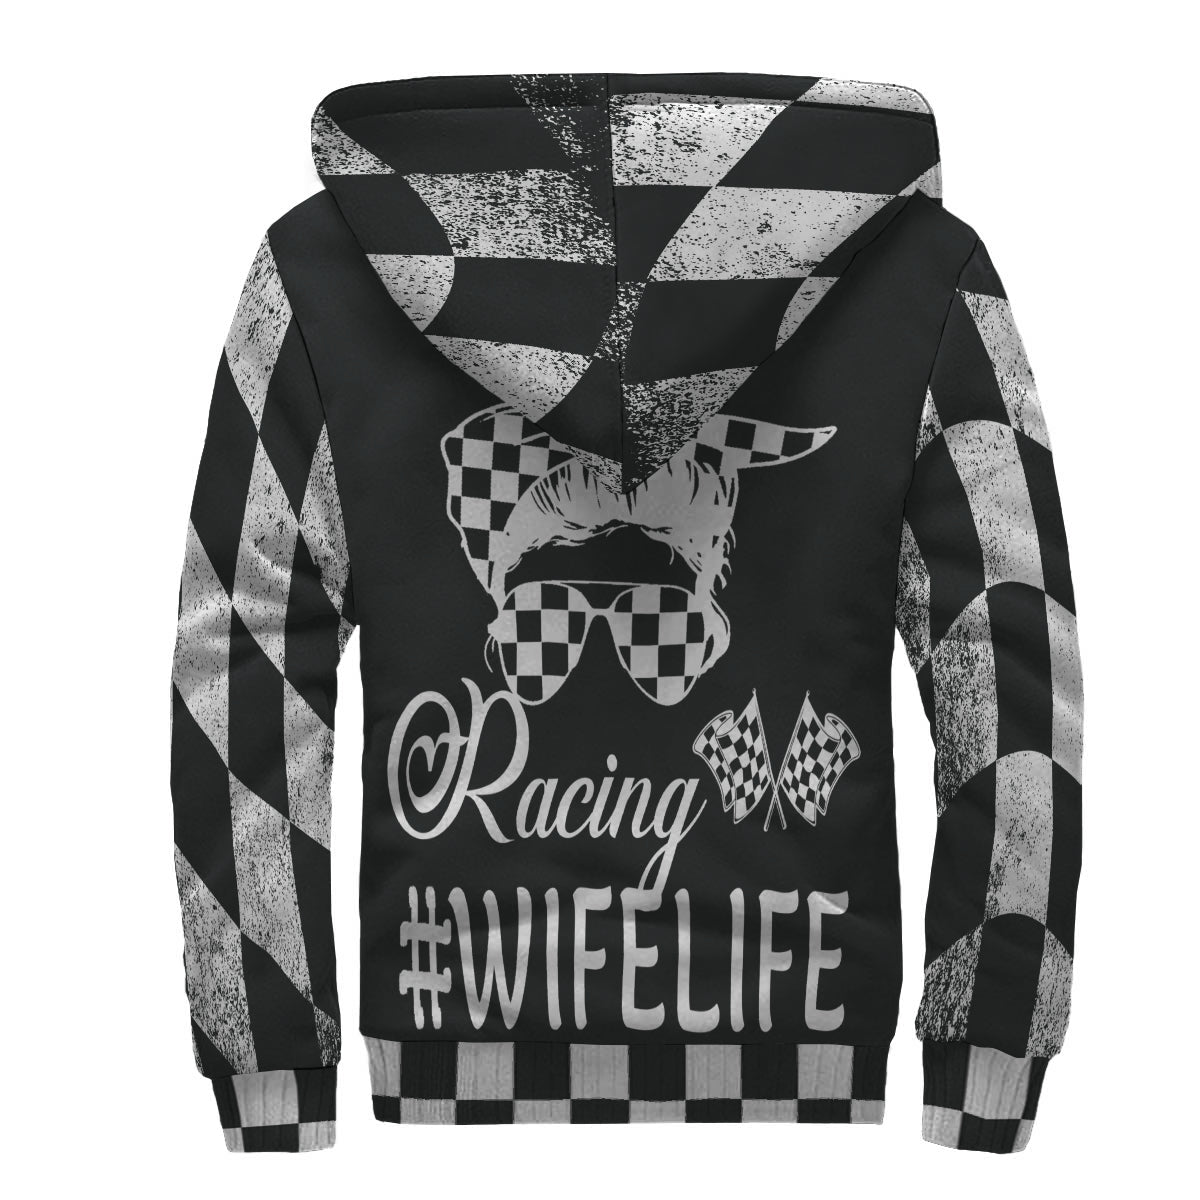 Racing wife jacket